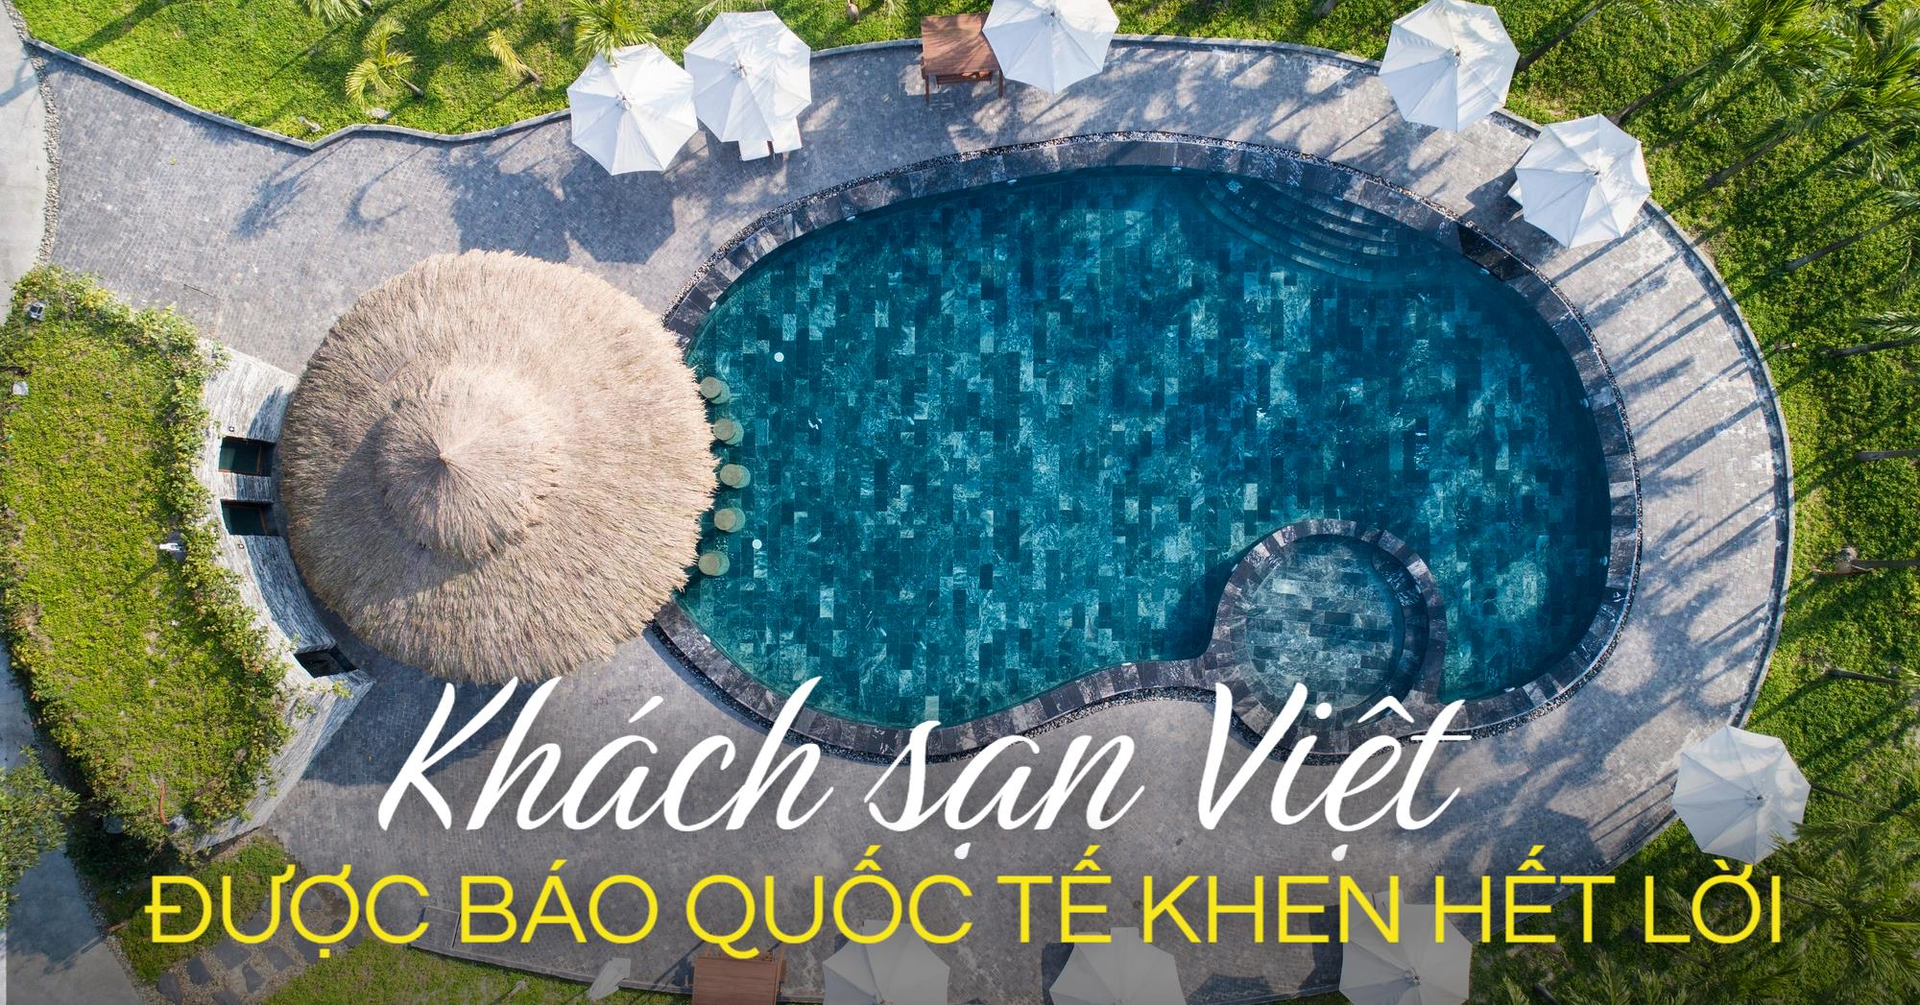 Cận cảnh điểm du lịch nghỉ dưỡng Việt Nam vừa nhận nhiều giải thưởng quốc tế: Sở hữu mạch khoáng nóng thiên nhiên mà không ai có thể chối từ - Ảnh 1.